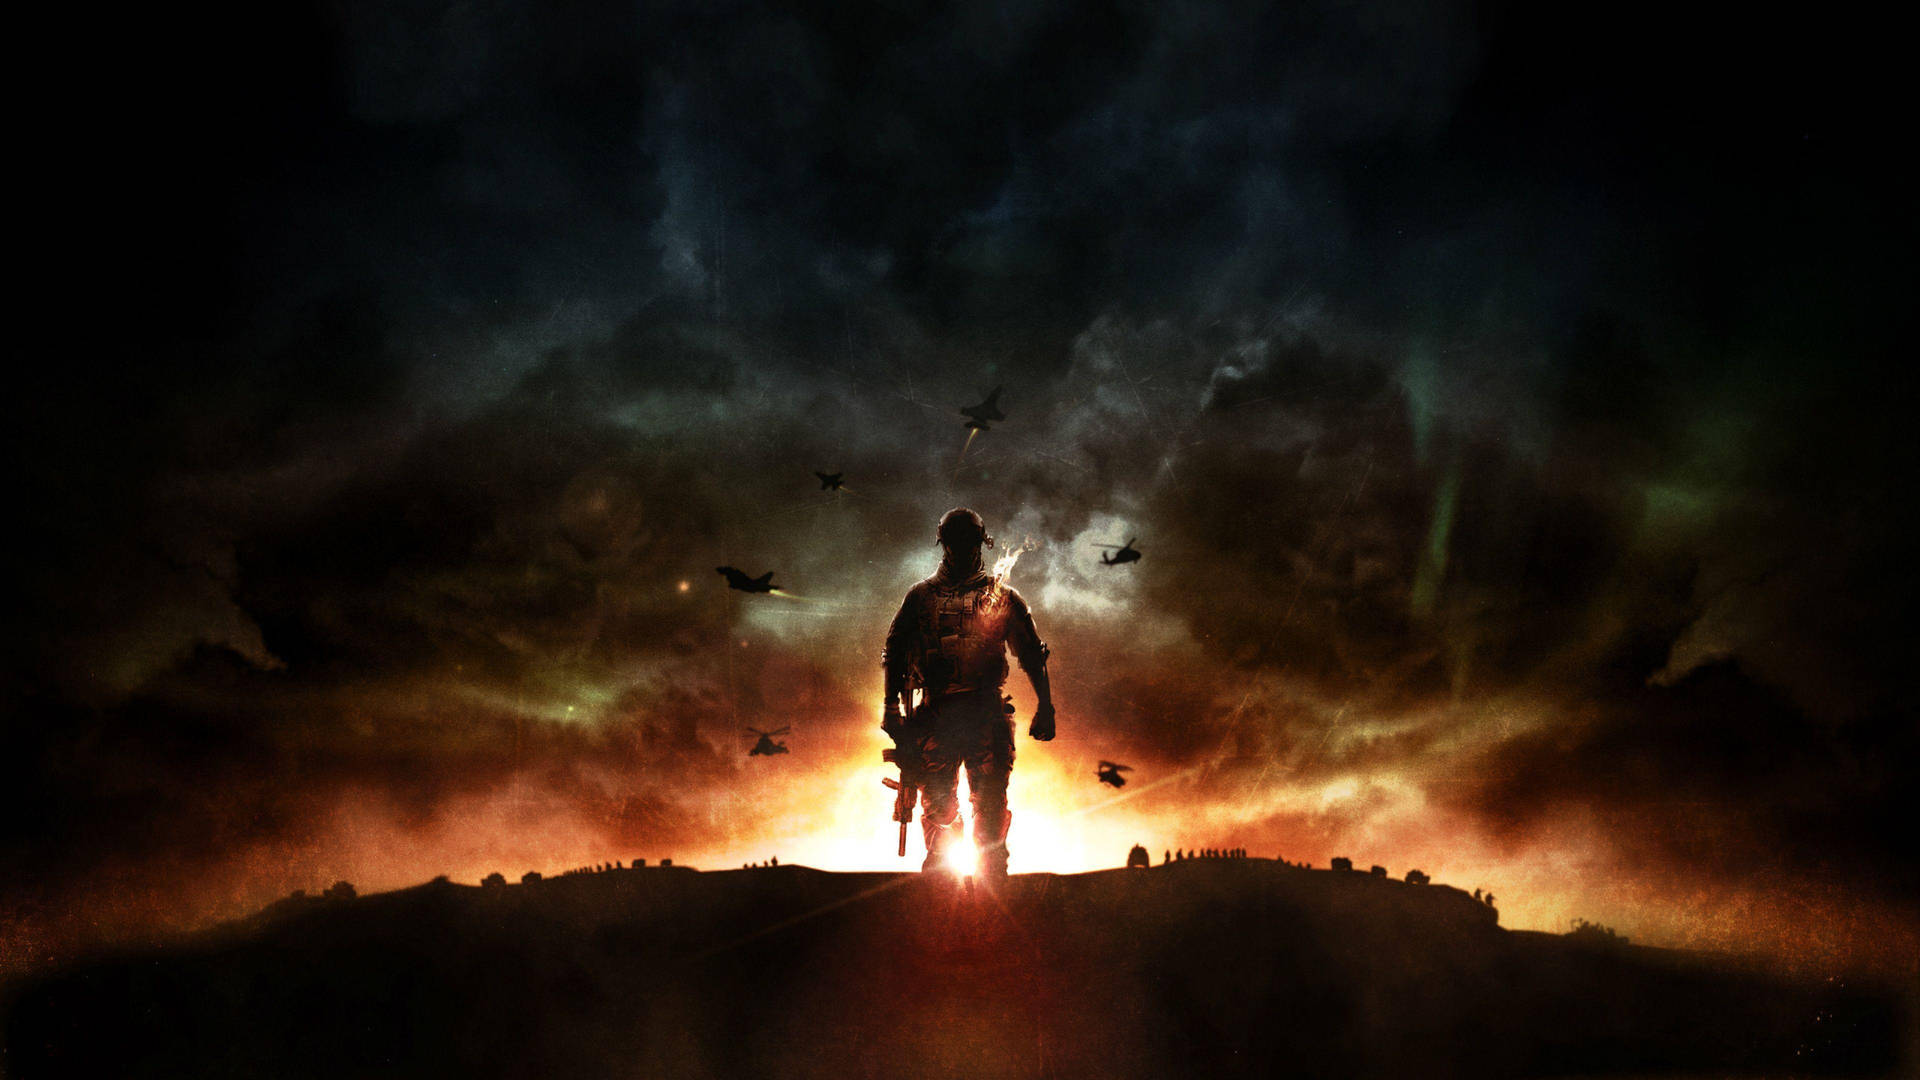 scapeFange flag i et Battlefield 4 bybillede Wallpaper